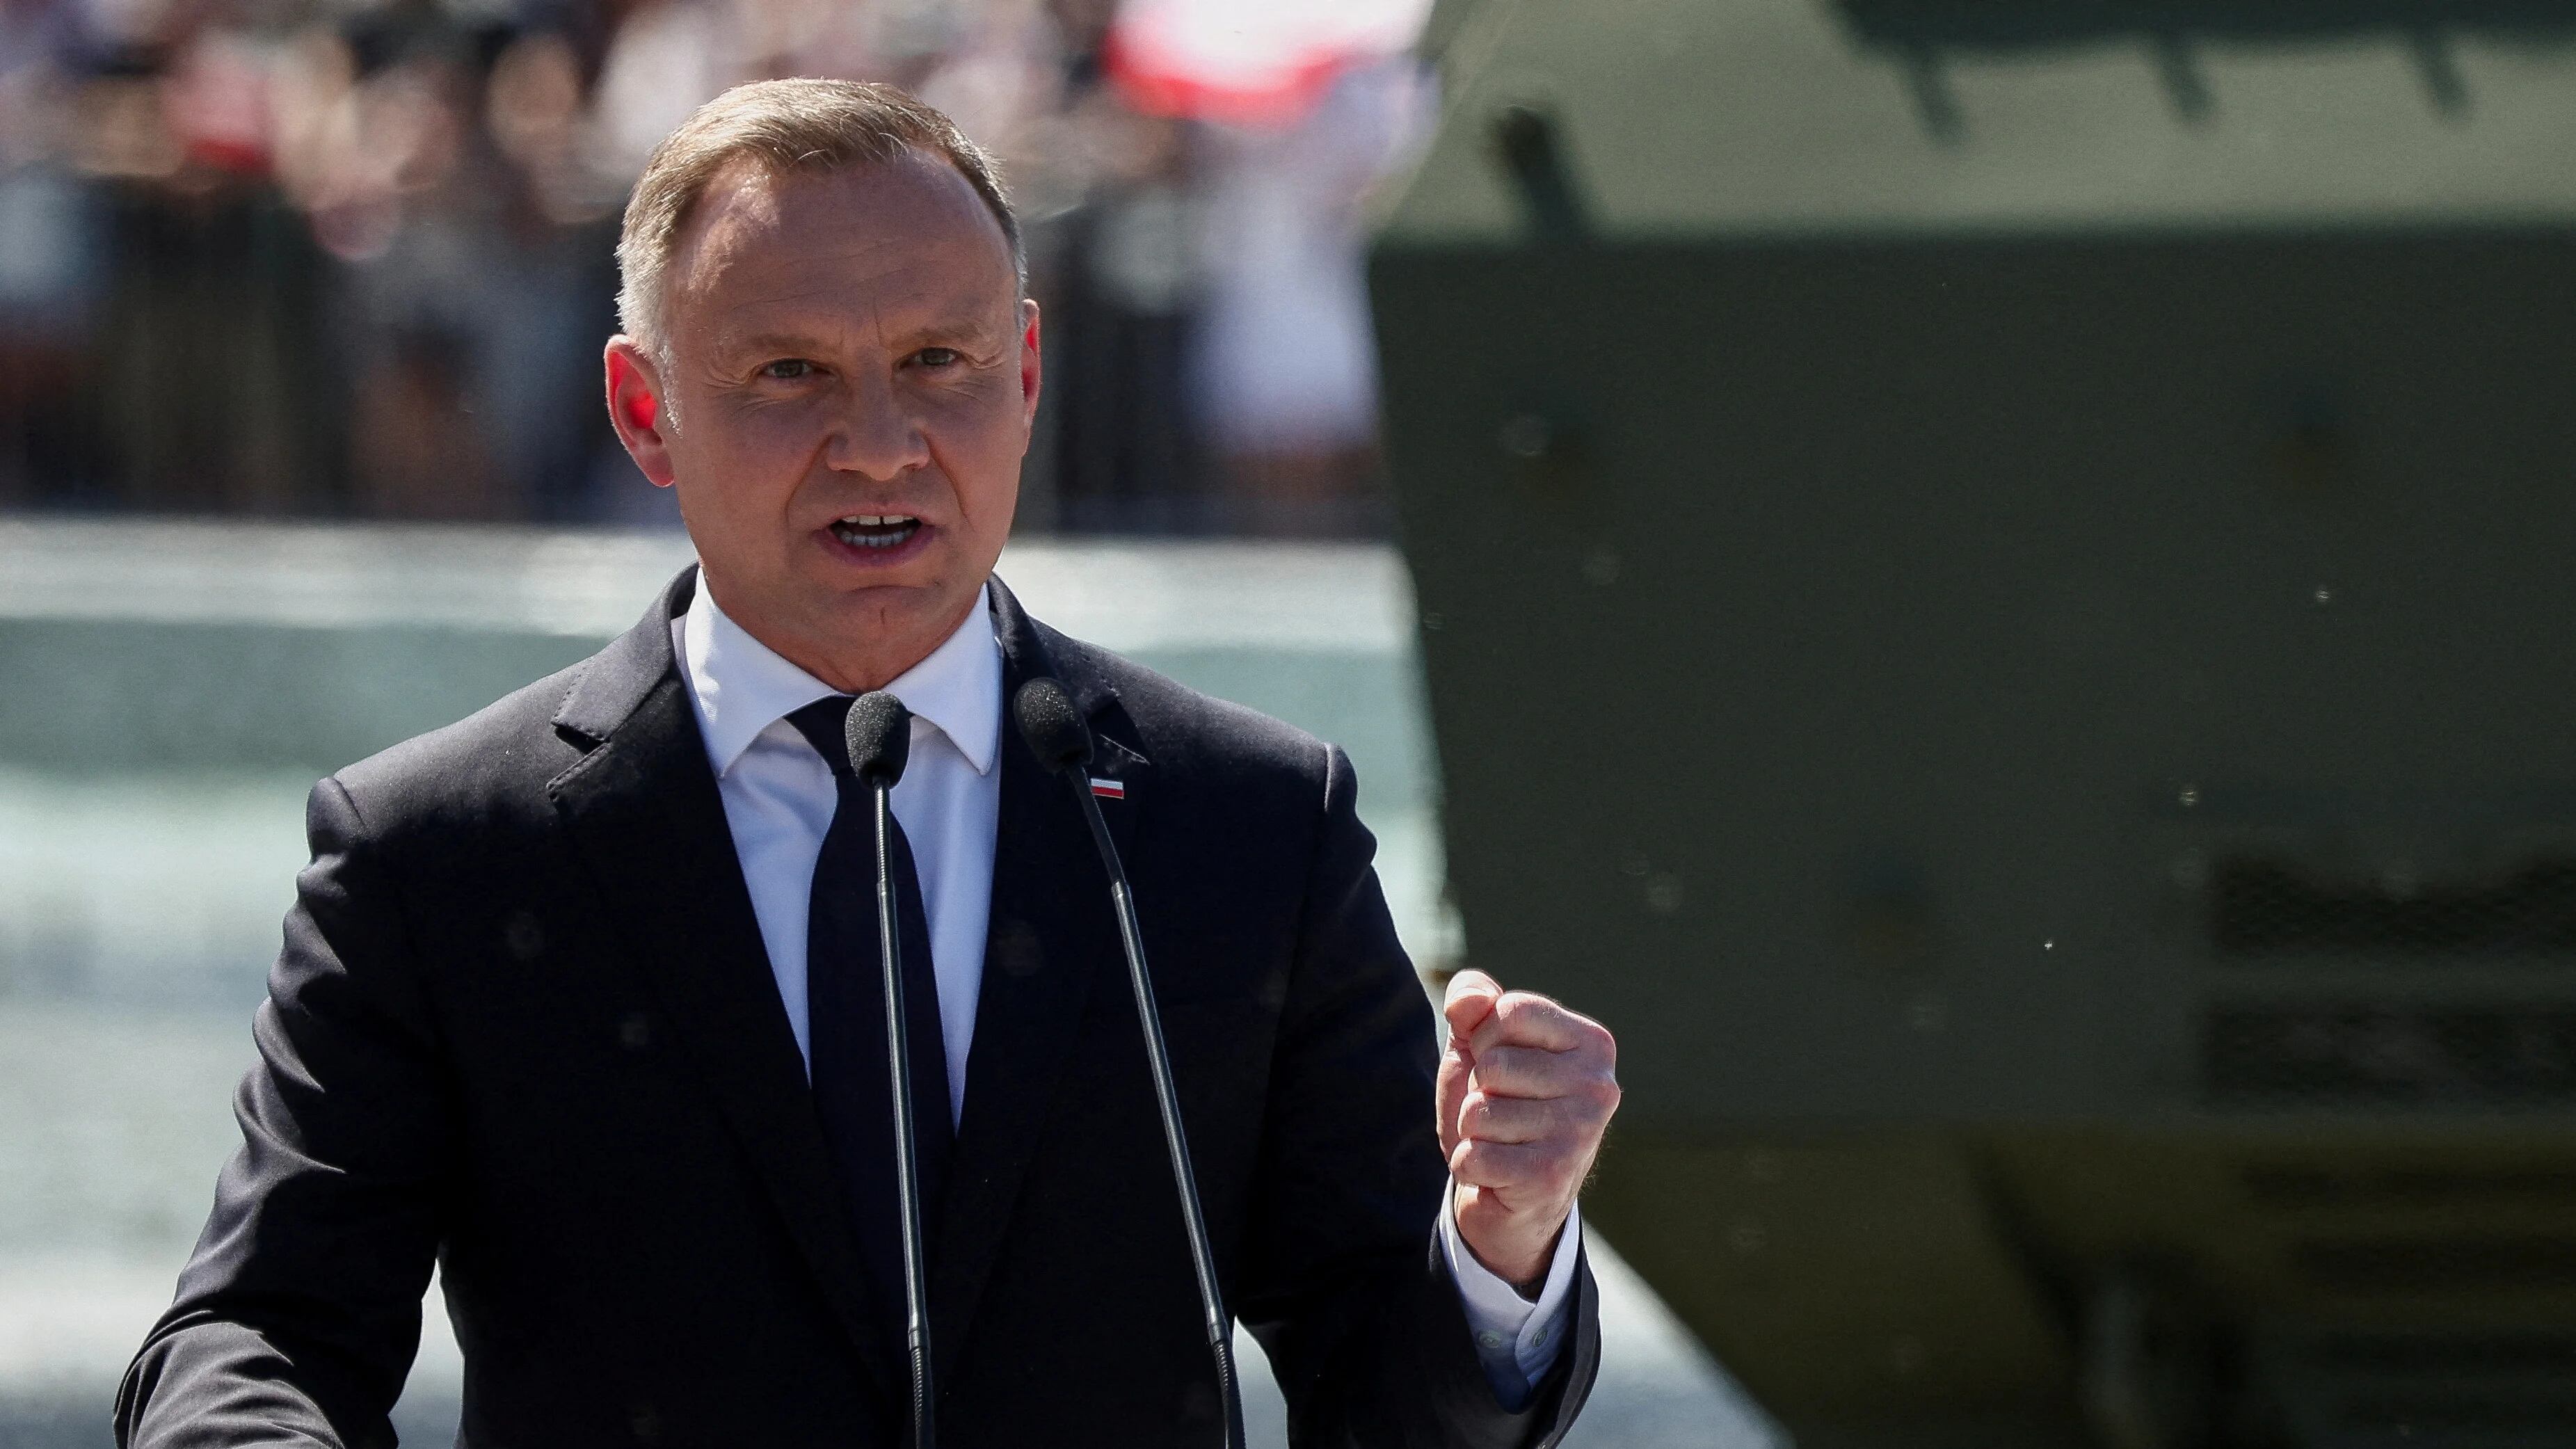 Polonia descartó que las polémicas afecten su relación con Ucrania pero advirtió a Zelensky que “nunca más vuelva a insultar” a su pueblo (REUTERS)